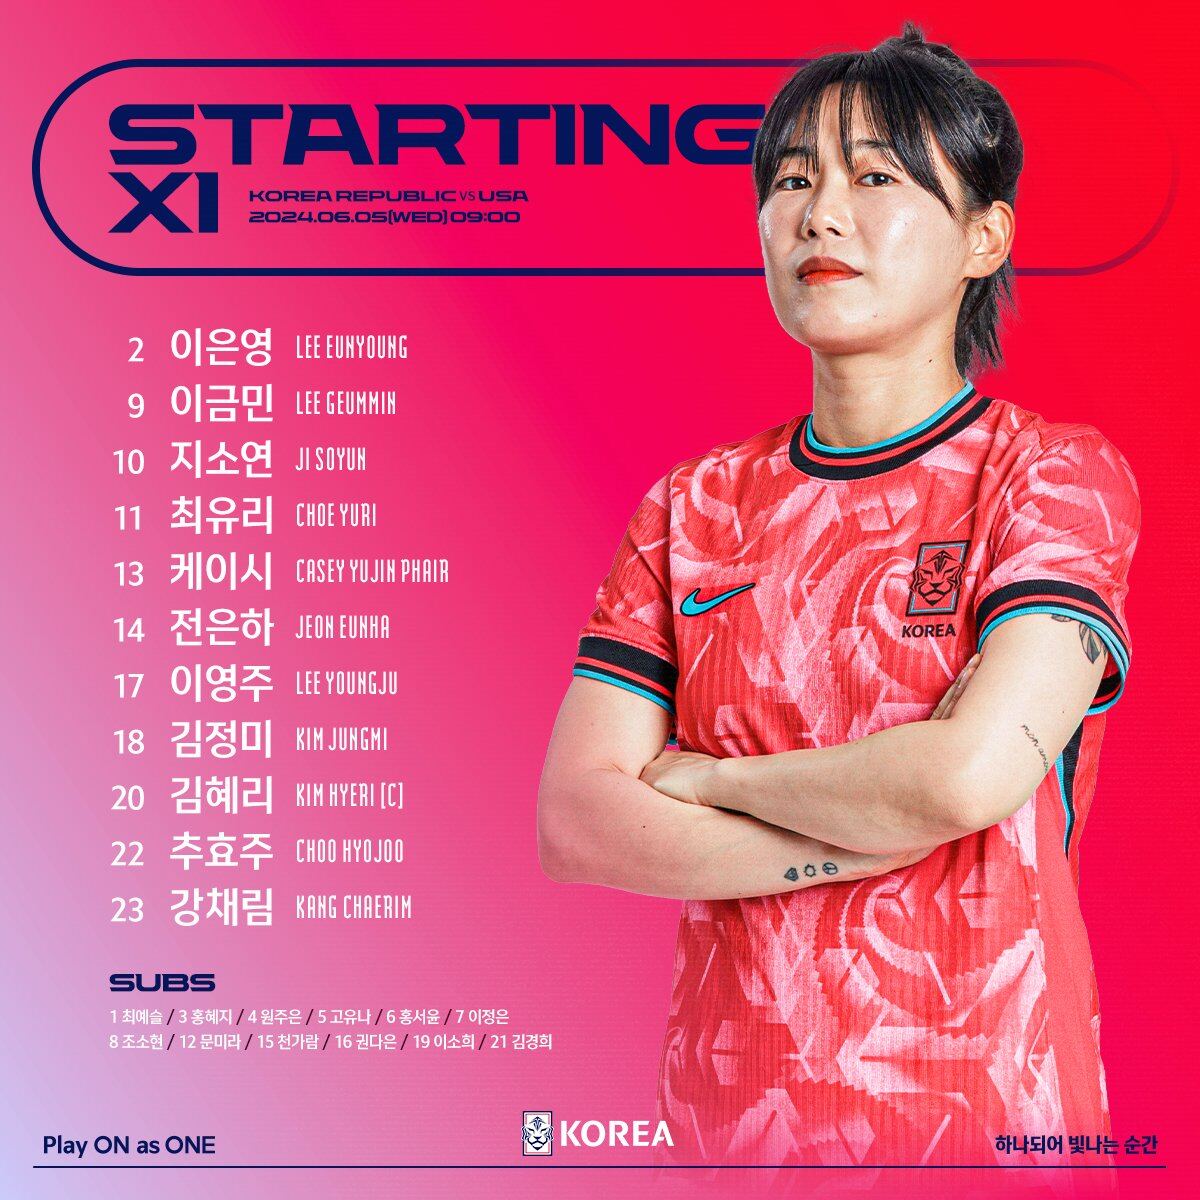 Starting XI, Korea Republic vs USA 2 Lee Eun-young 9 Lee Geum-min 10 Jo So-yun 11 Choe Yu-ri 13 Casey Yu-jin Phair 14 Jeon Eun-ha 17 Lee Young-ju 18 Kim Zhu 20 Kim Hye-ri (Captain) 22 Choo Hyo-joo 23 Kang Chae-rim SUBS: 12 names in Hangul [KFA Crest of Tiger] KOREA Play ON as ONE